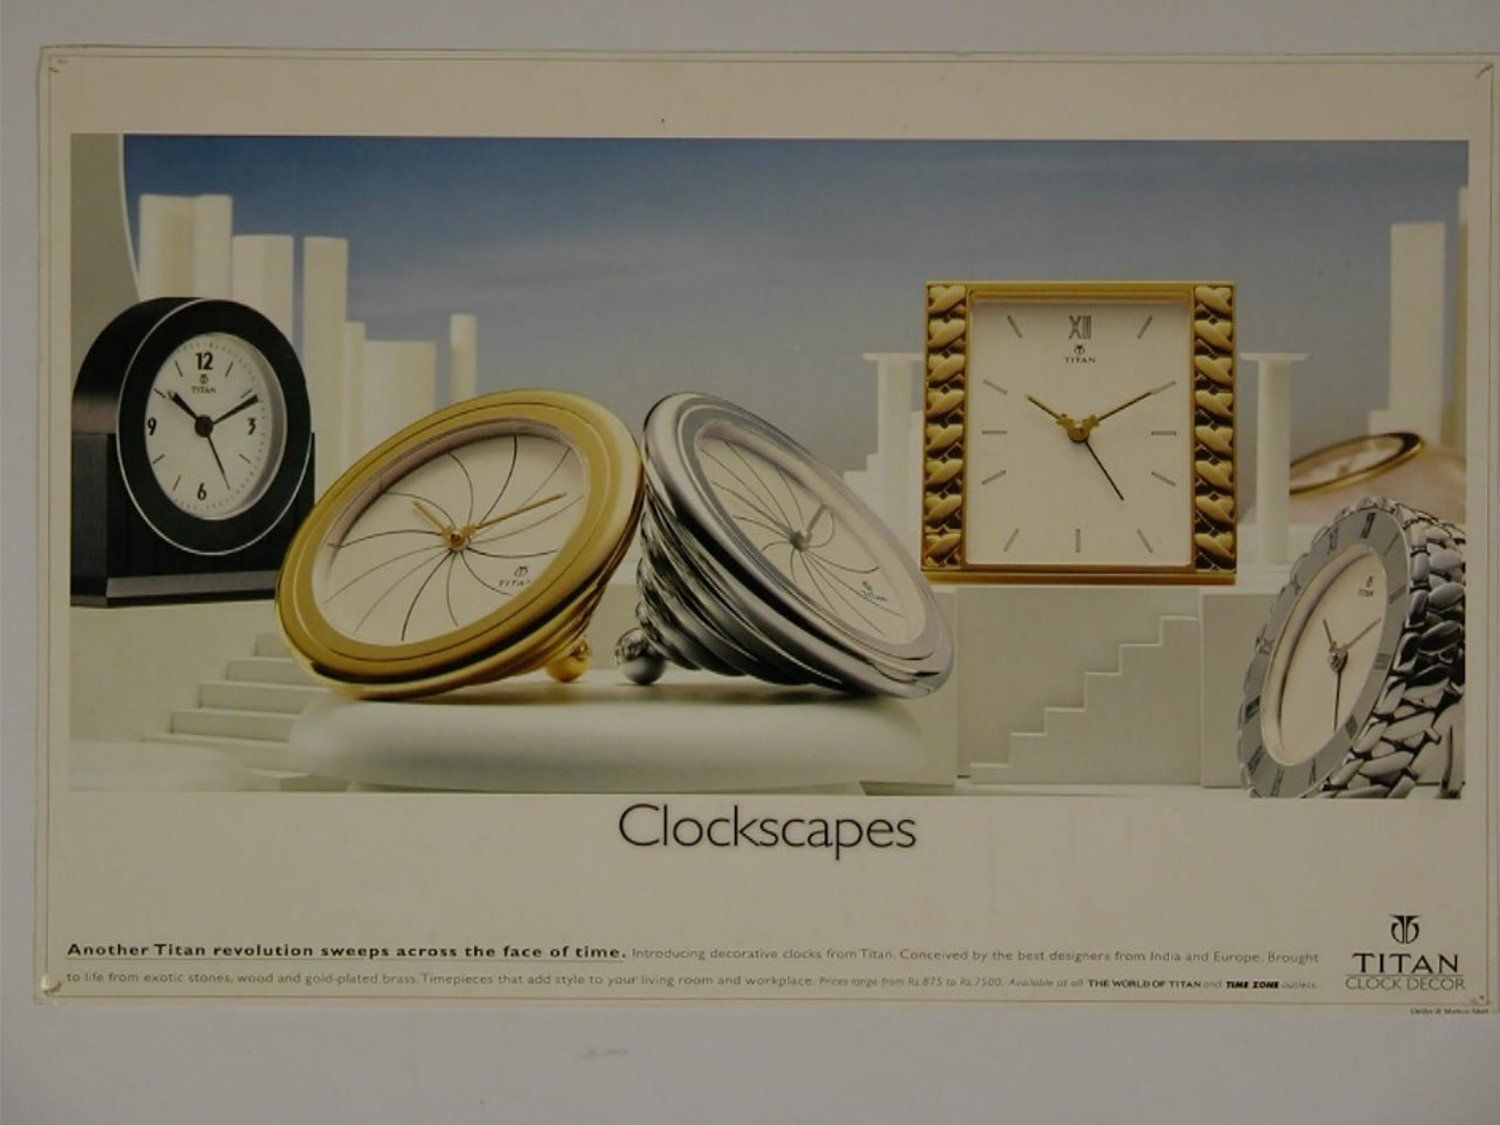 Titan clockscapes